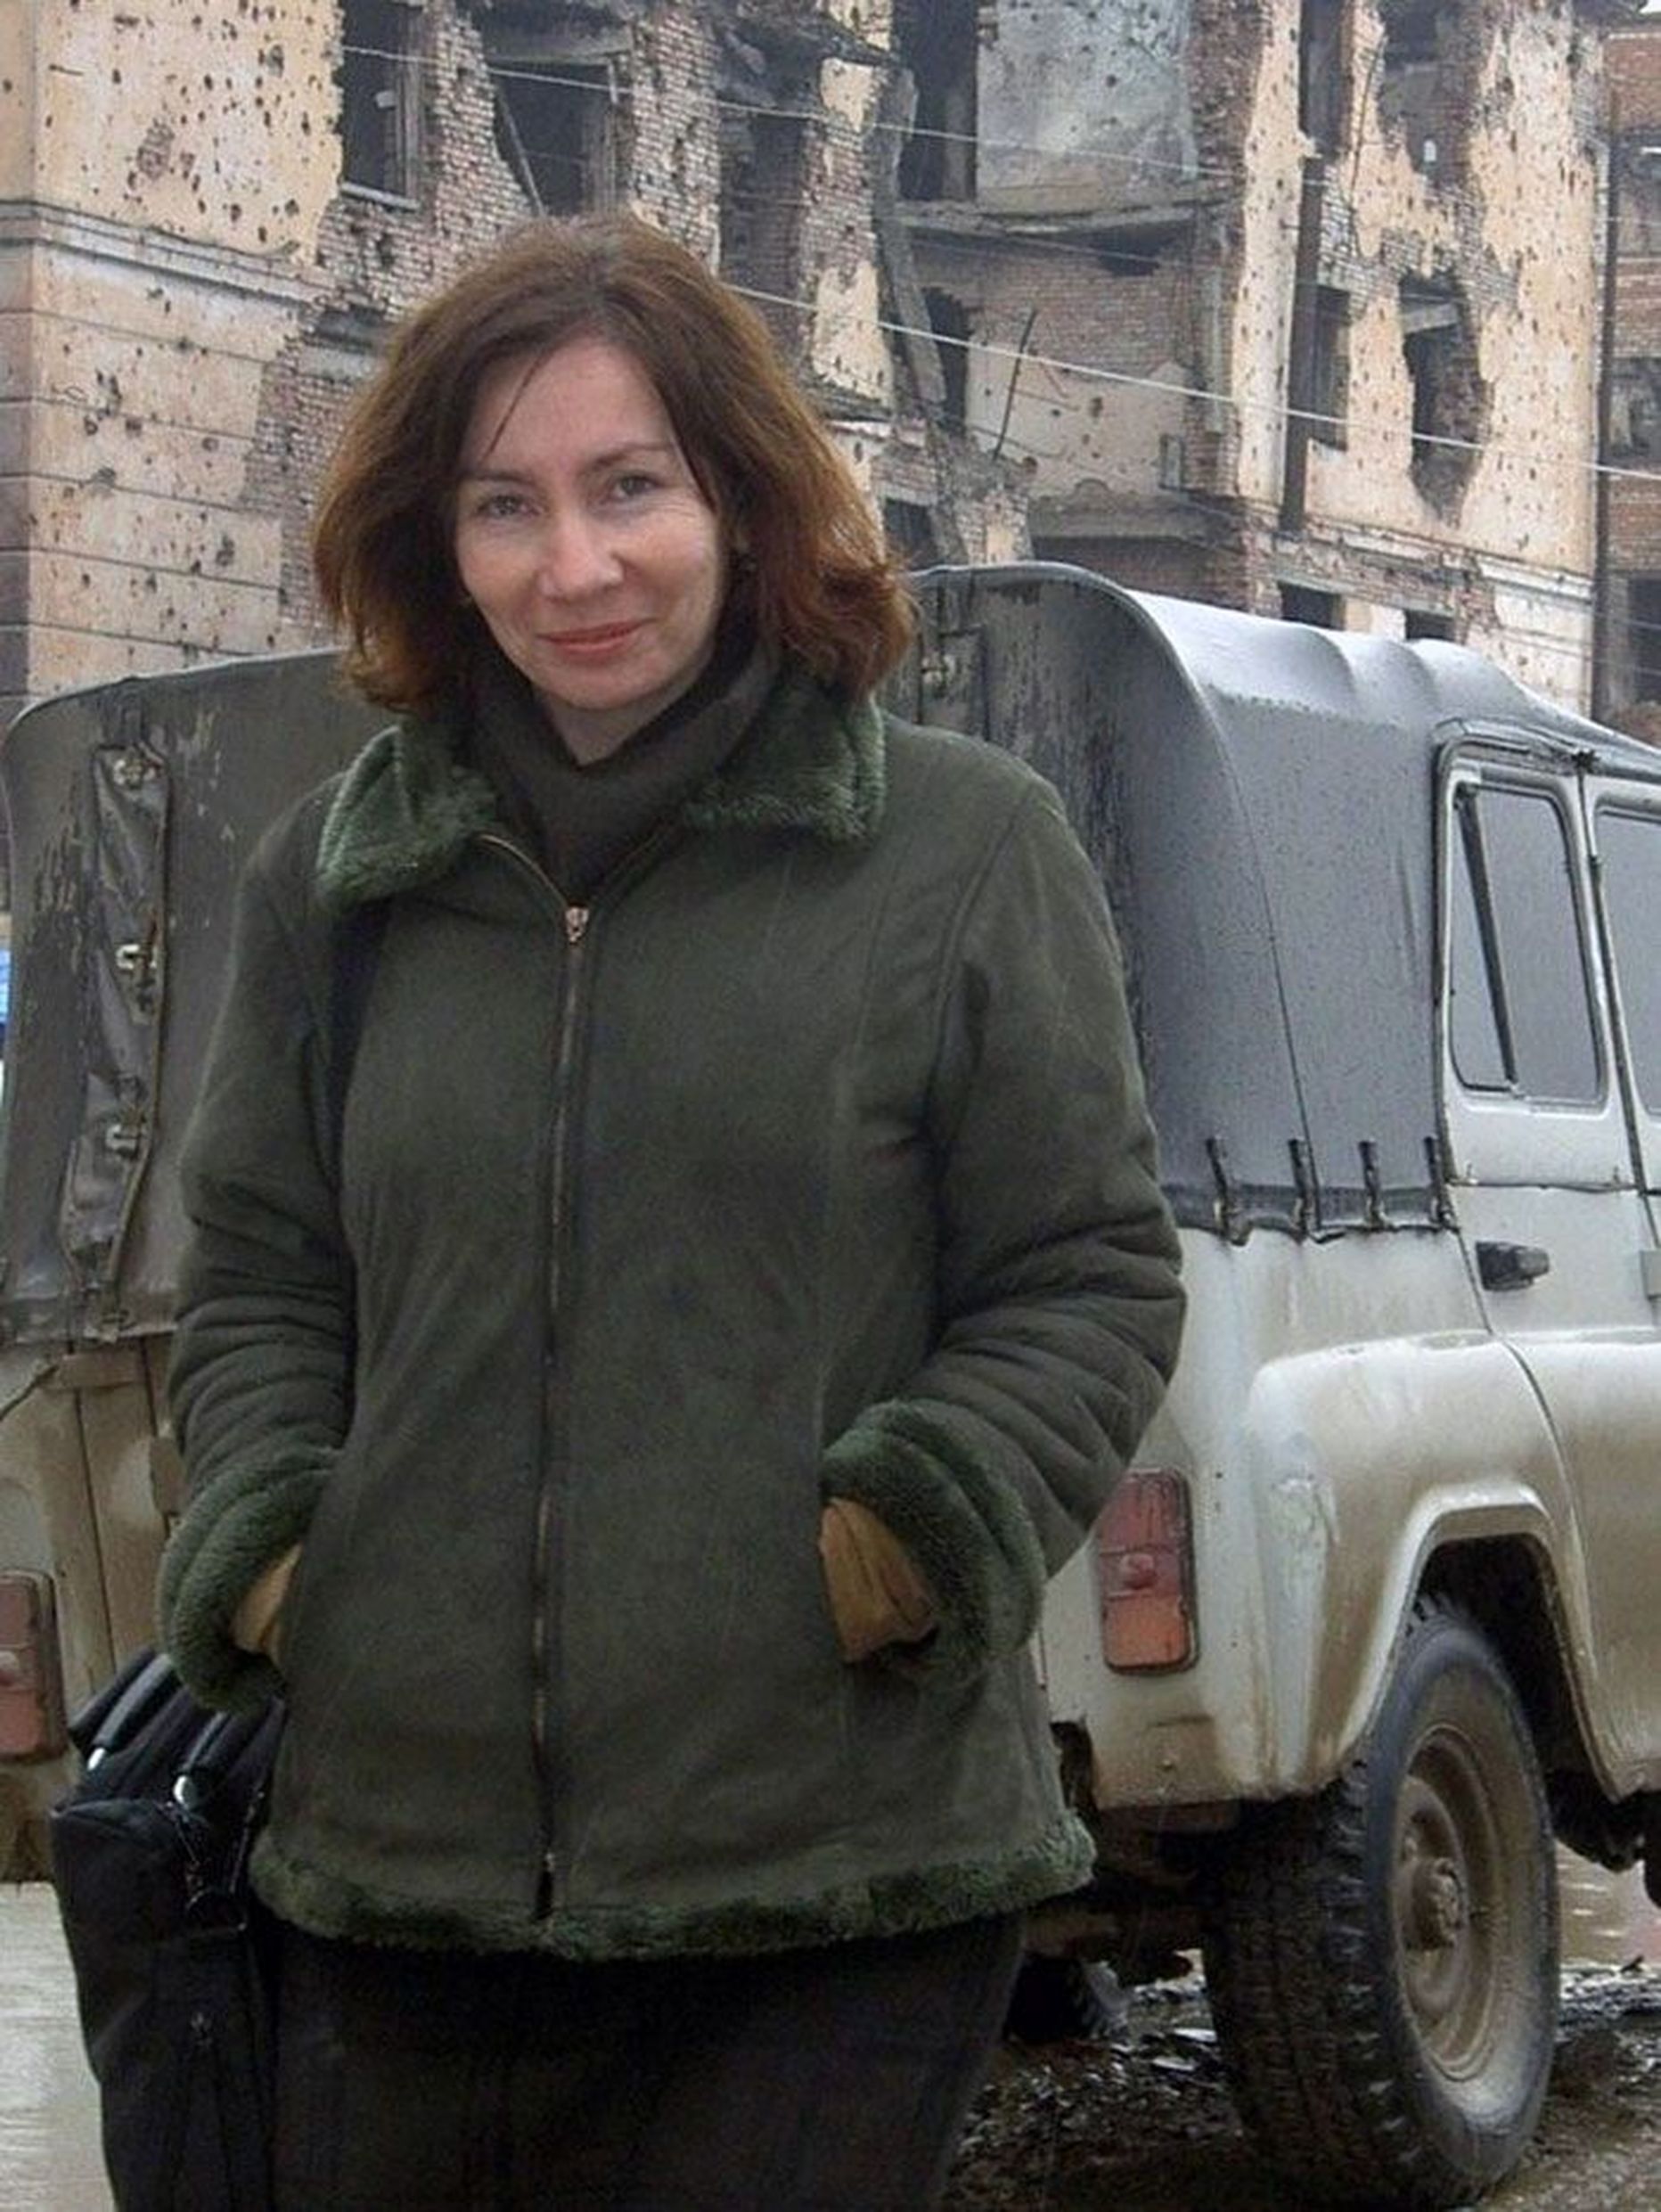 Inimõiguslase Natalja Estemirova tapmine oli ühe selle aasta suhteliselt märkamatult kulgenud tendentsi väljendus – erimeelsused Groznõi praeguste võimukandjatega on nii mõnelegi tšetšeenile elu maksnud.